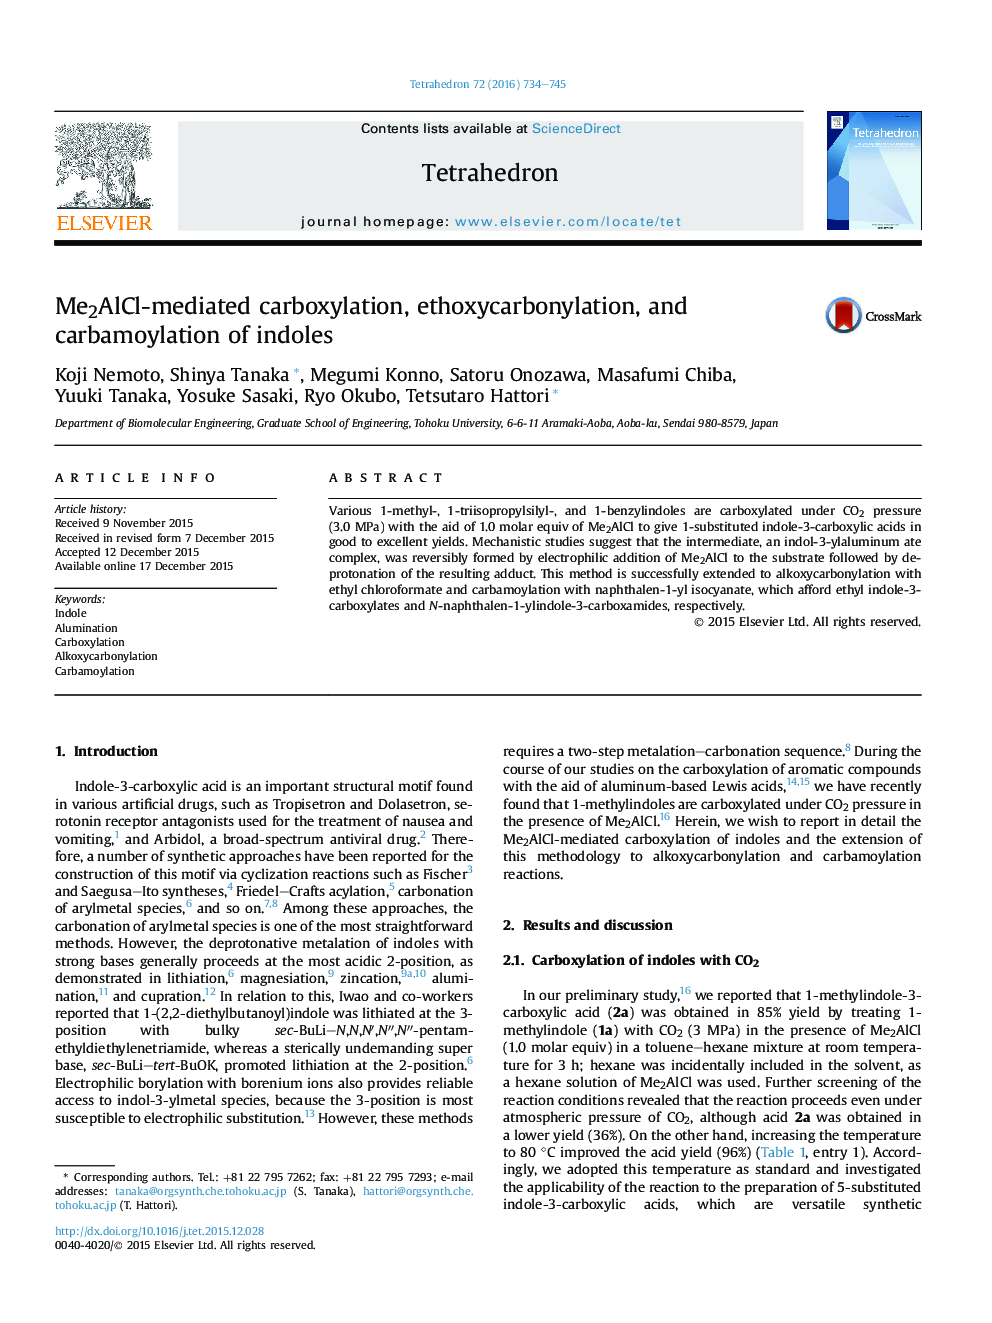 Me2AlCl-mediated carboxylation, ethoxycarbonylation, and carbamoylation of indoles